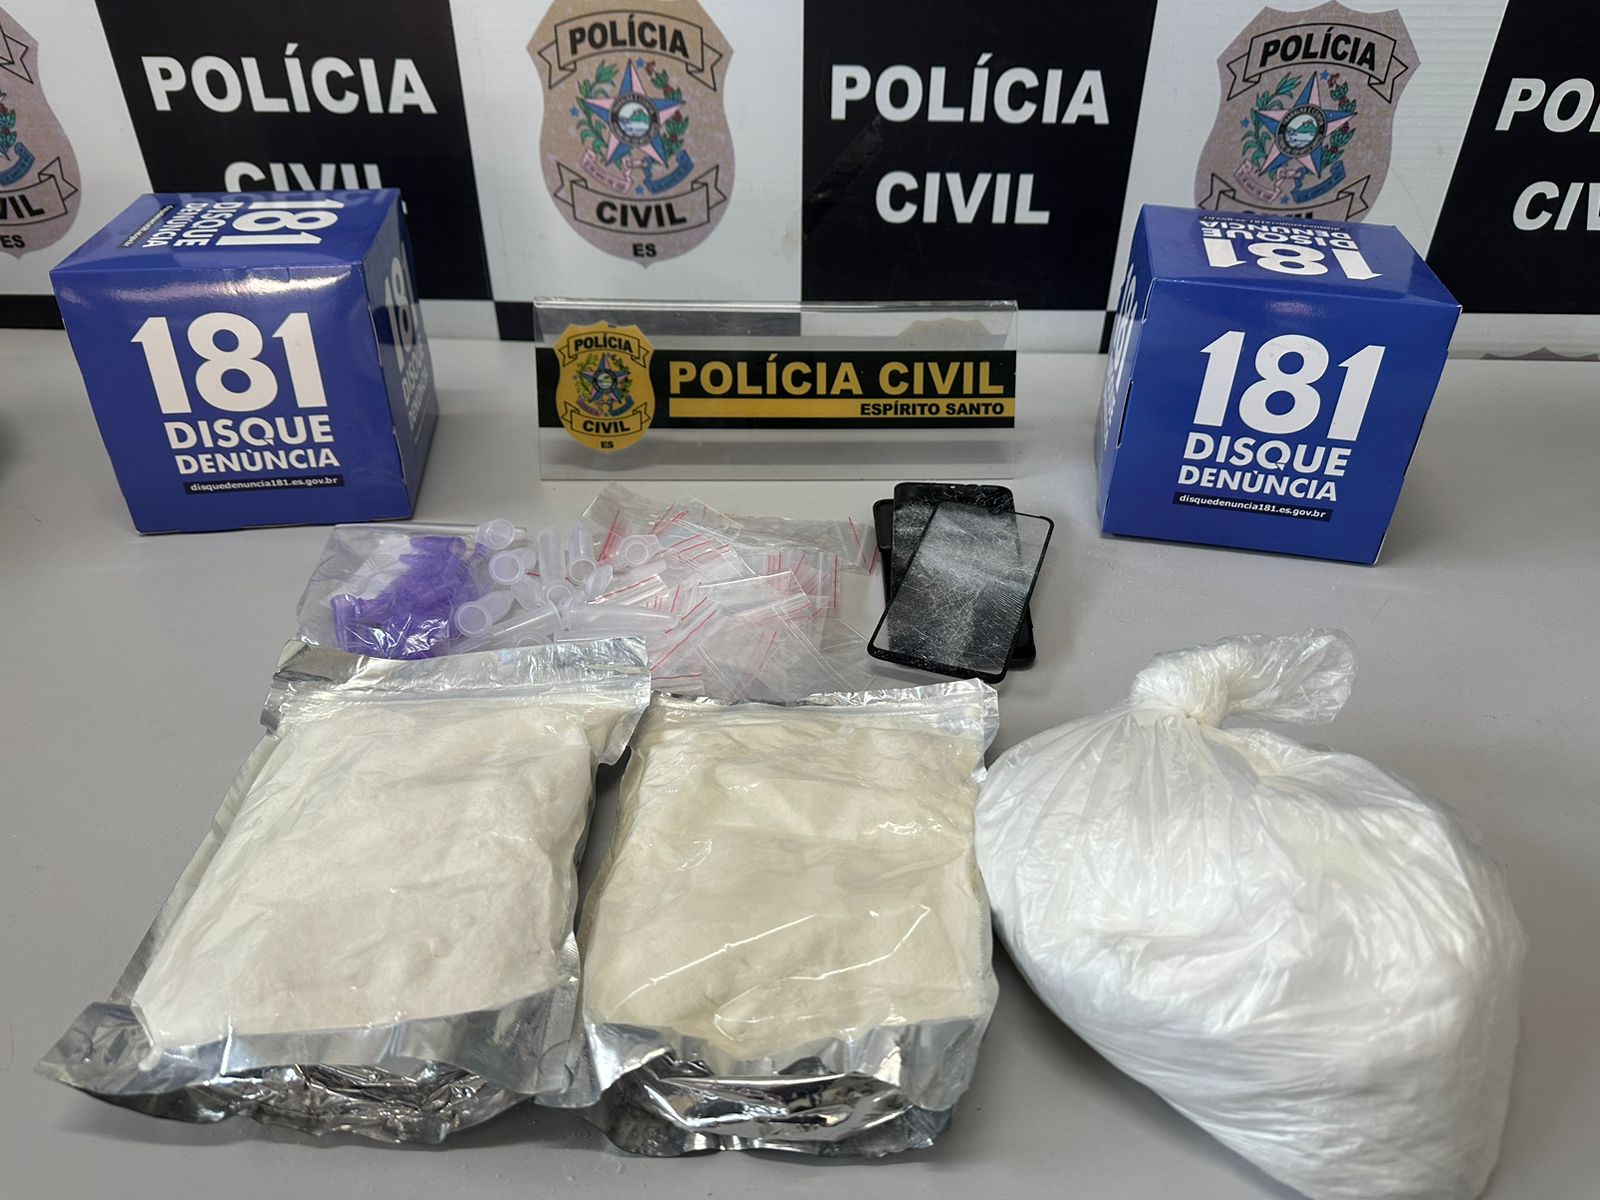 Investigações apontaram que o homem estaria fornecendo cocaína para os motoristas que trafegavam na BR 262. Segundo a polícia, eles utilizavam a droga em serviço